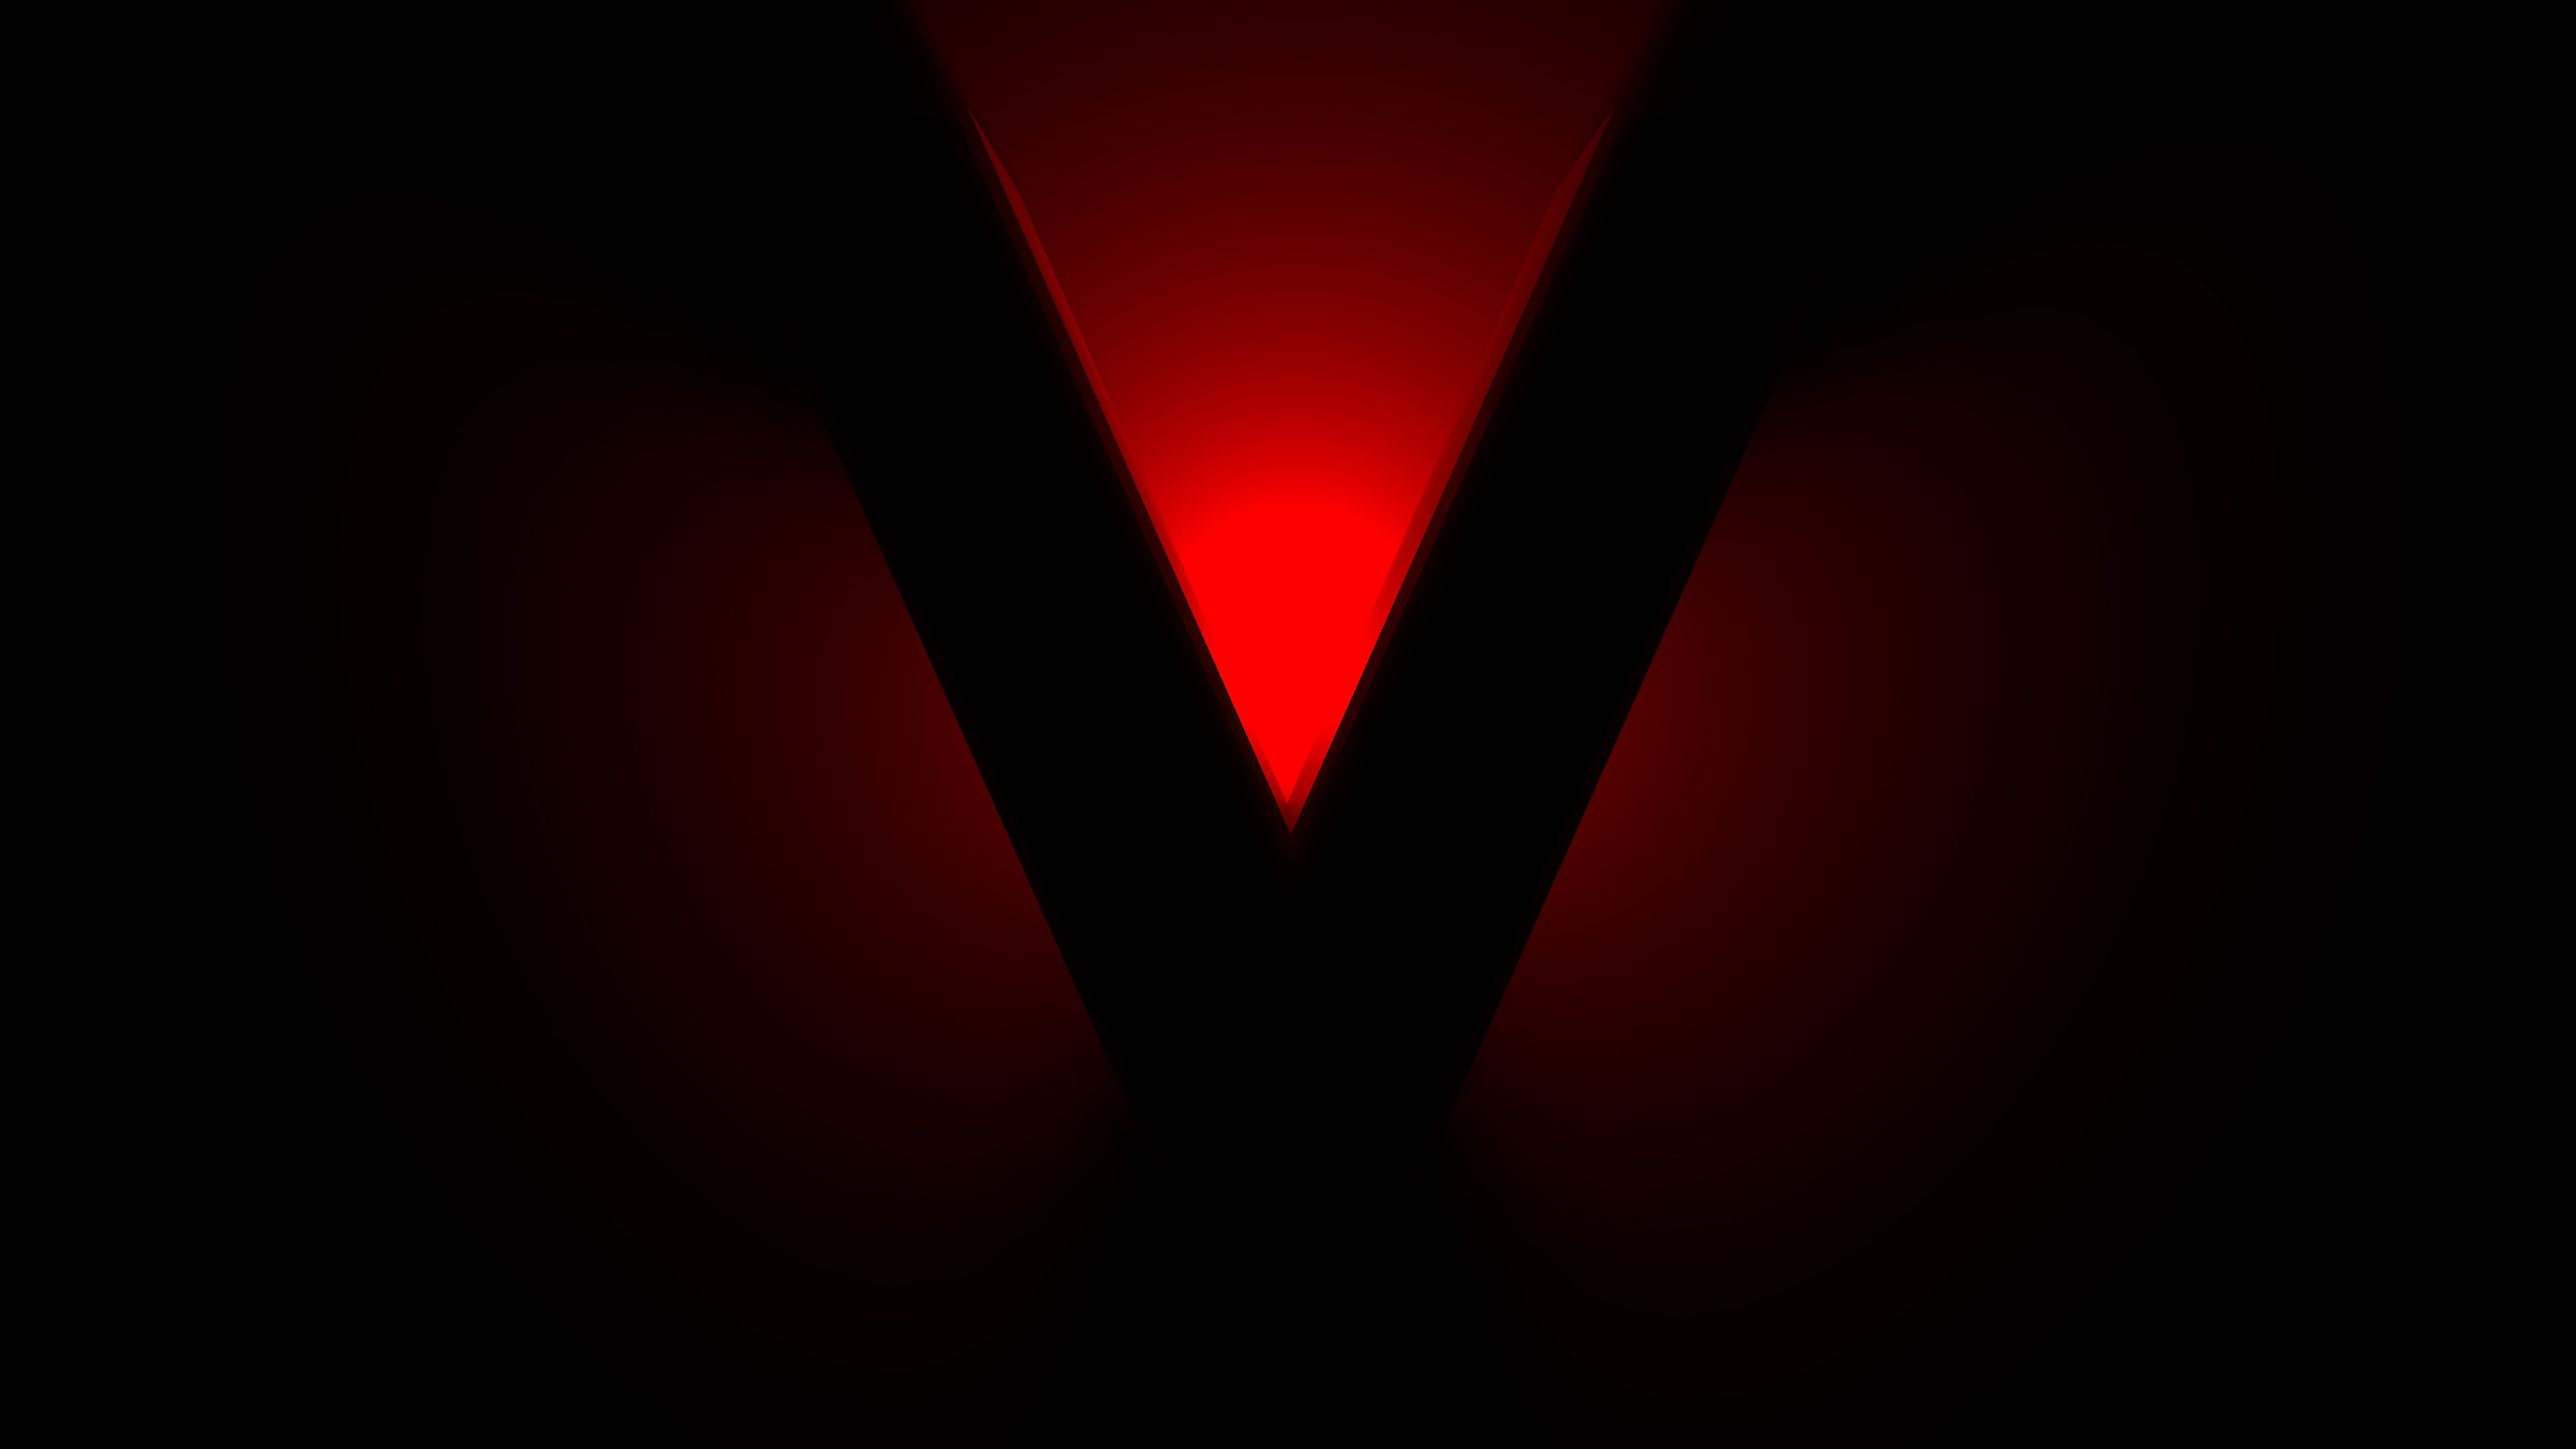 V for Valentine 4K Wallpapers